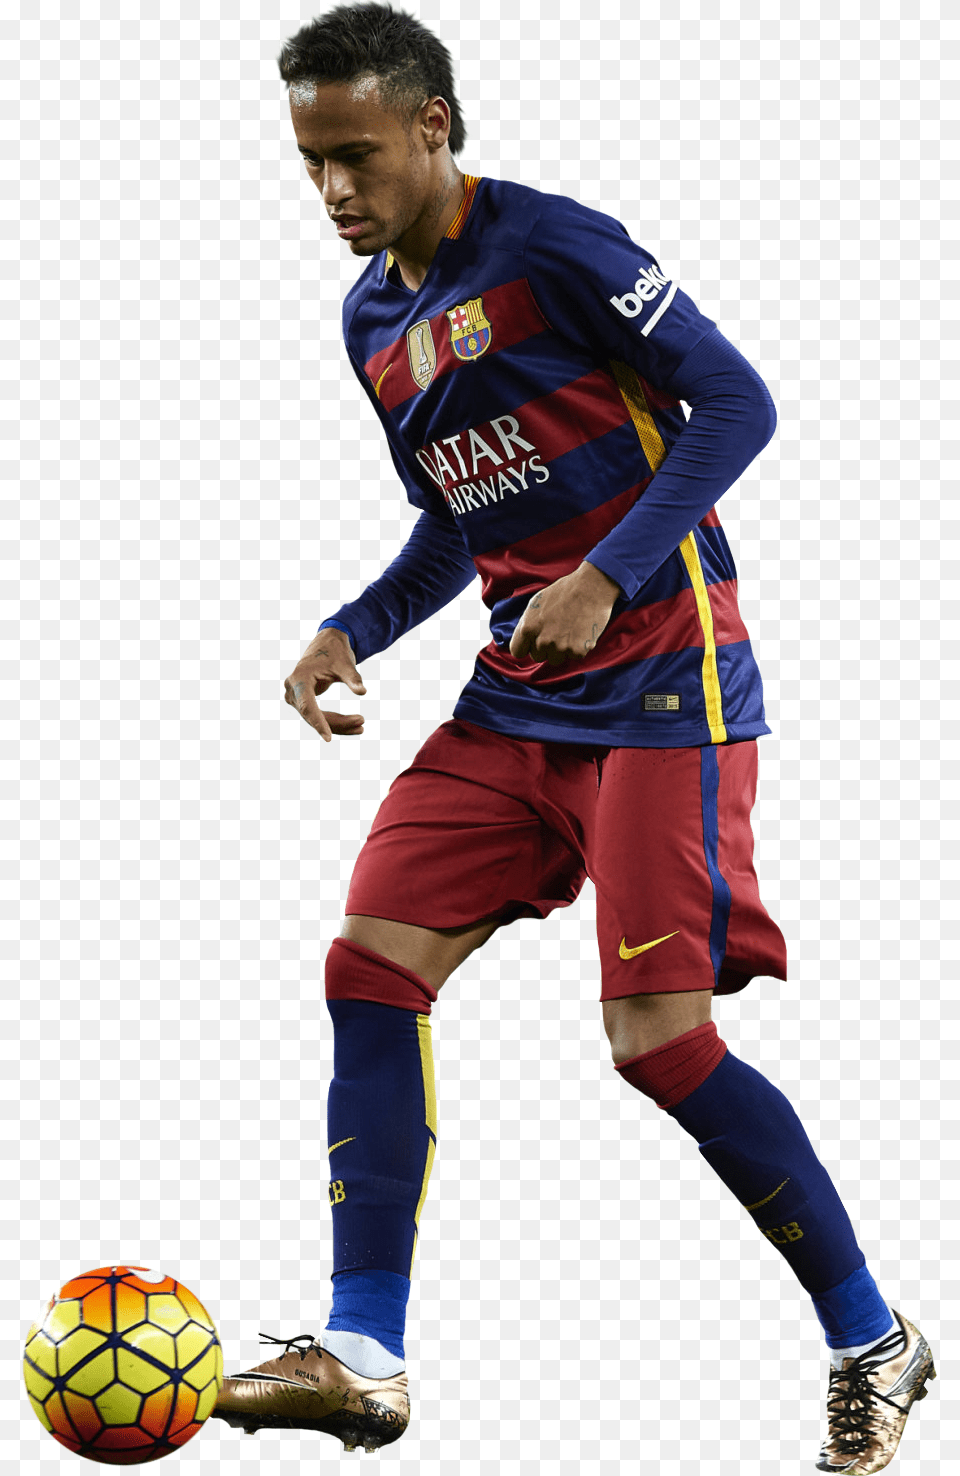 Neymar Brazil Soccer Player Neymar Jr Barcelona Renders, Sport, Ball, Sphere, Soccer Ball Png Image